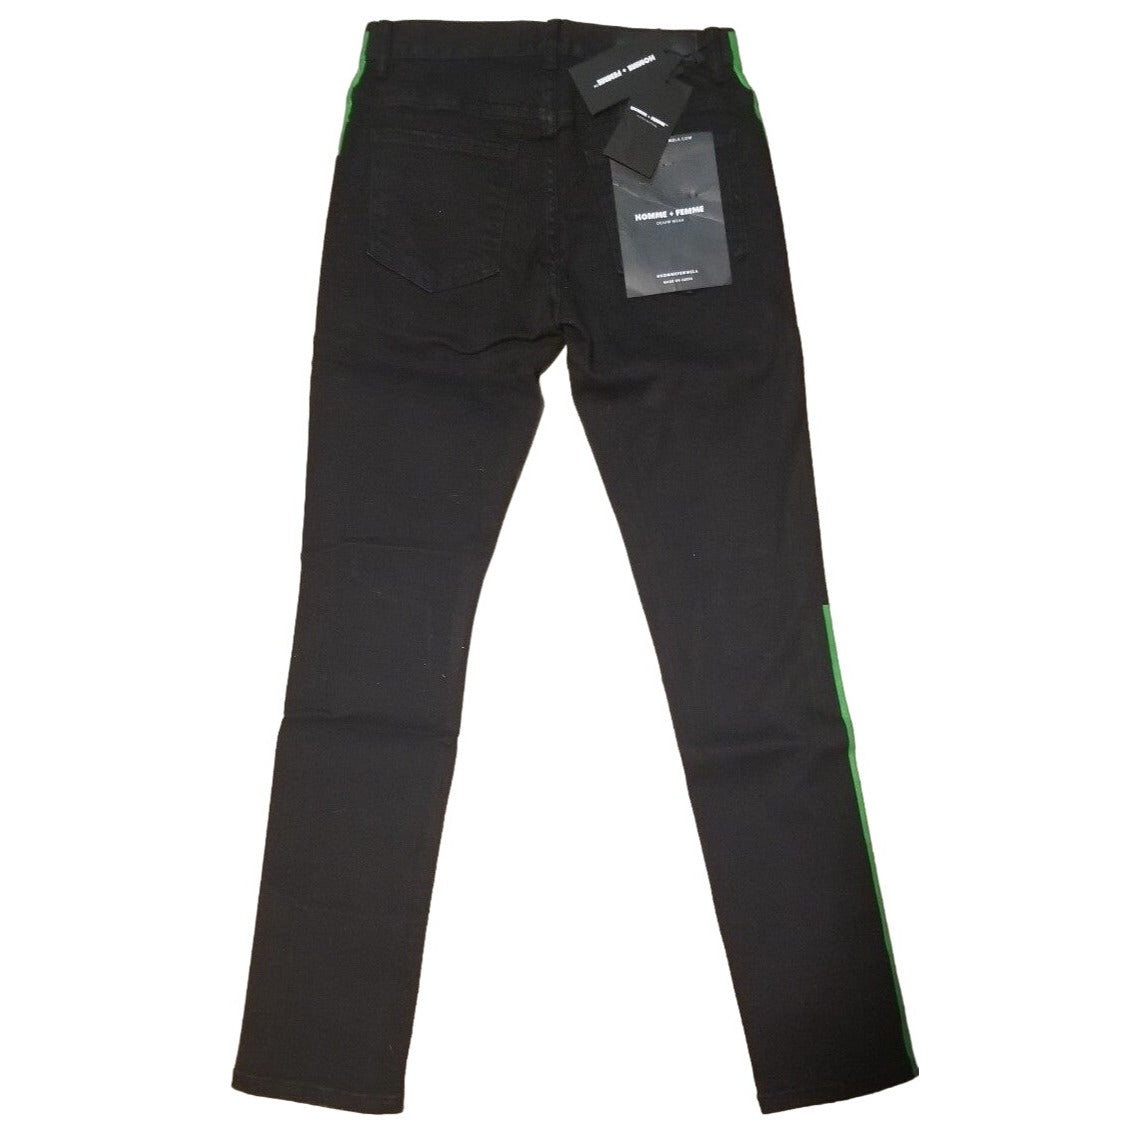 Homme Femme Black Jean's Green Side Stripe UNISEX-Size 28